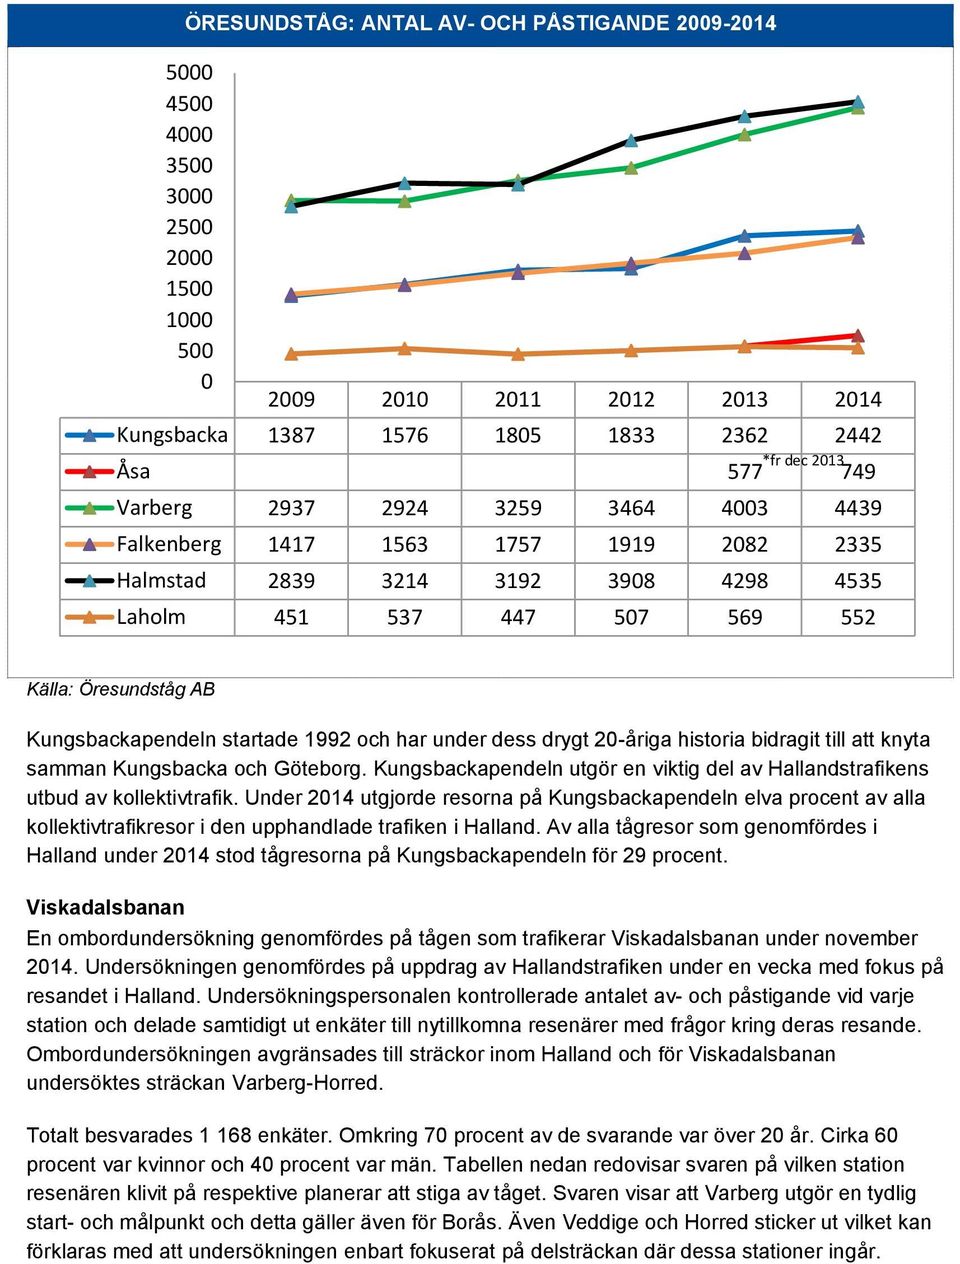 1992 och har under dess drygt 20-åriga historia bidragit till att knyta samman Kungsbacka och Göteborg. Kungsbackapendeln utgör en viktig del av Hallandstrafikens utbud av kollektivtrafik.